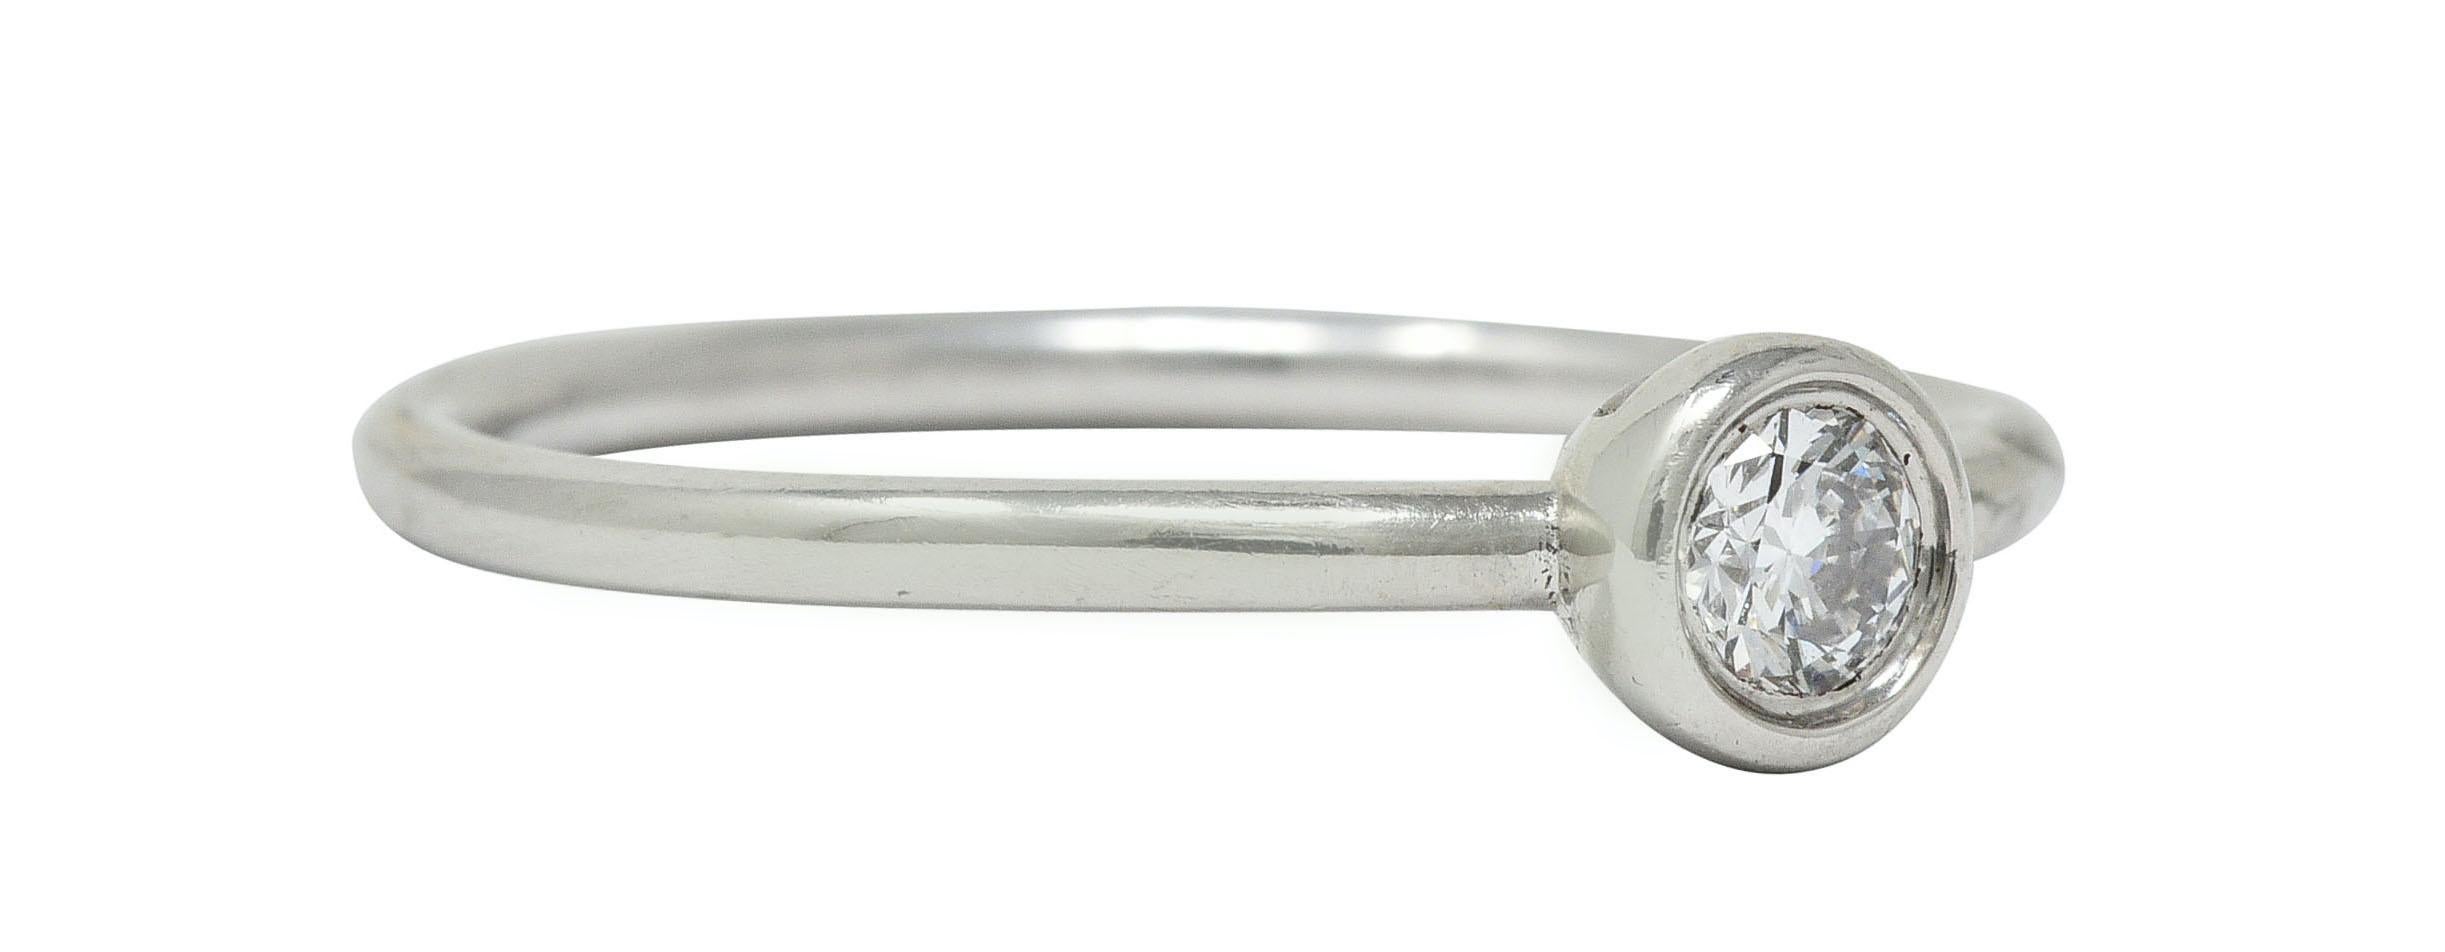 Schlanker Ring mit einem runden Diamanten im Brillantschliff in der Mitte der Lünette

Mit einem Gewicht von etwa 0,15 Karat, Farbe G/H und Reinheit VS

Vollständig signiert Tiffany & Co.

PT950 für Platin gestempelt

Aus der zeitgenössischen